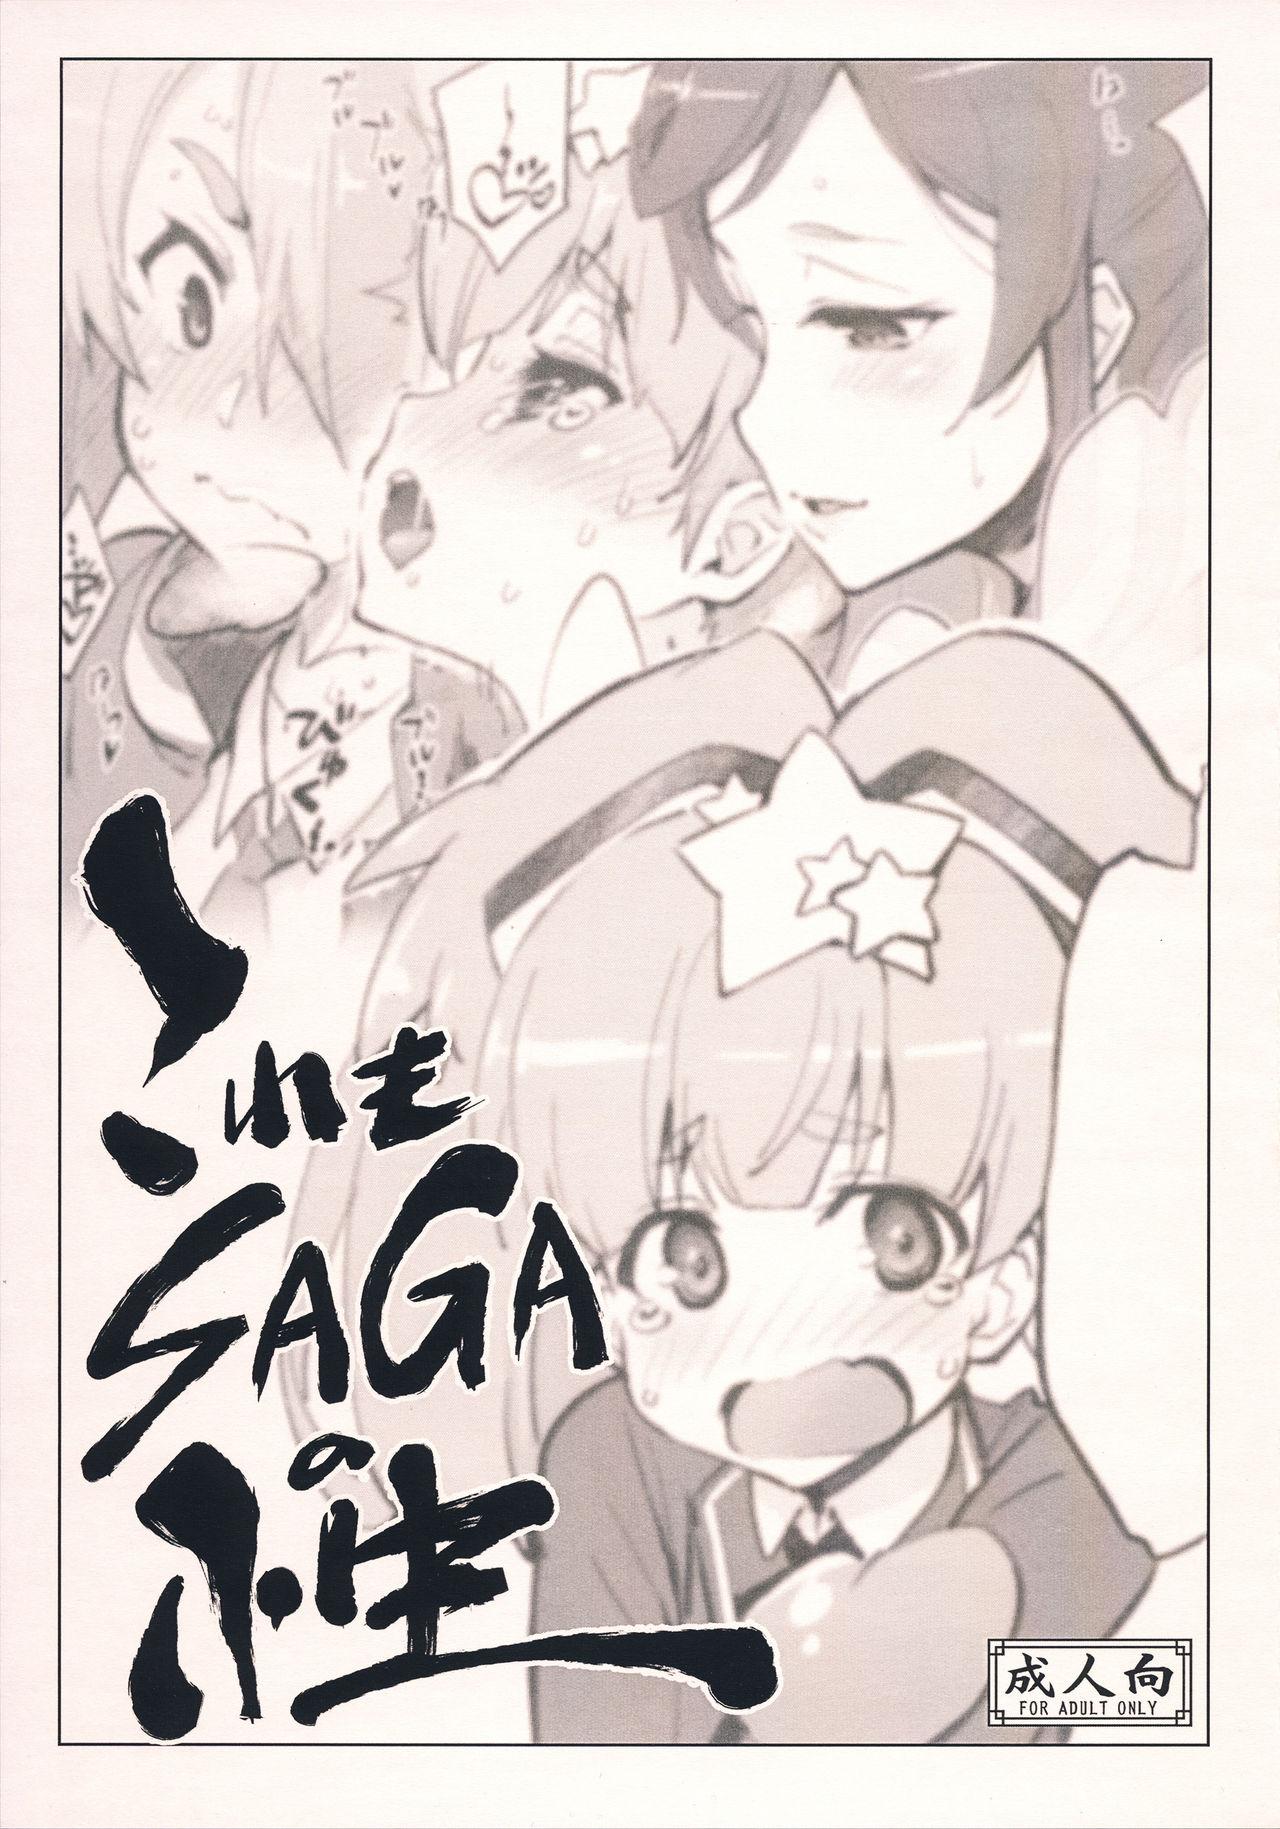 Kore mo SAGA no Saga 0